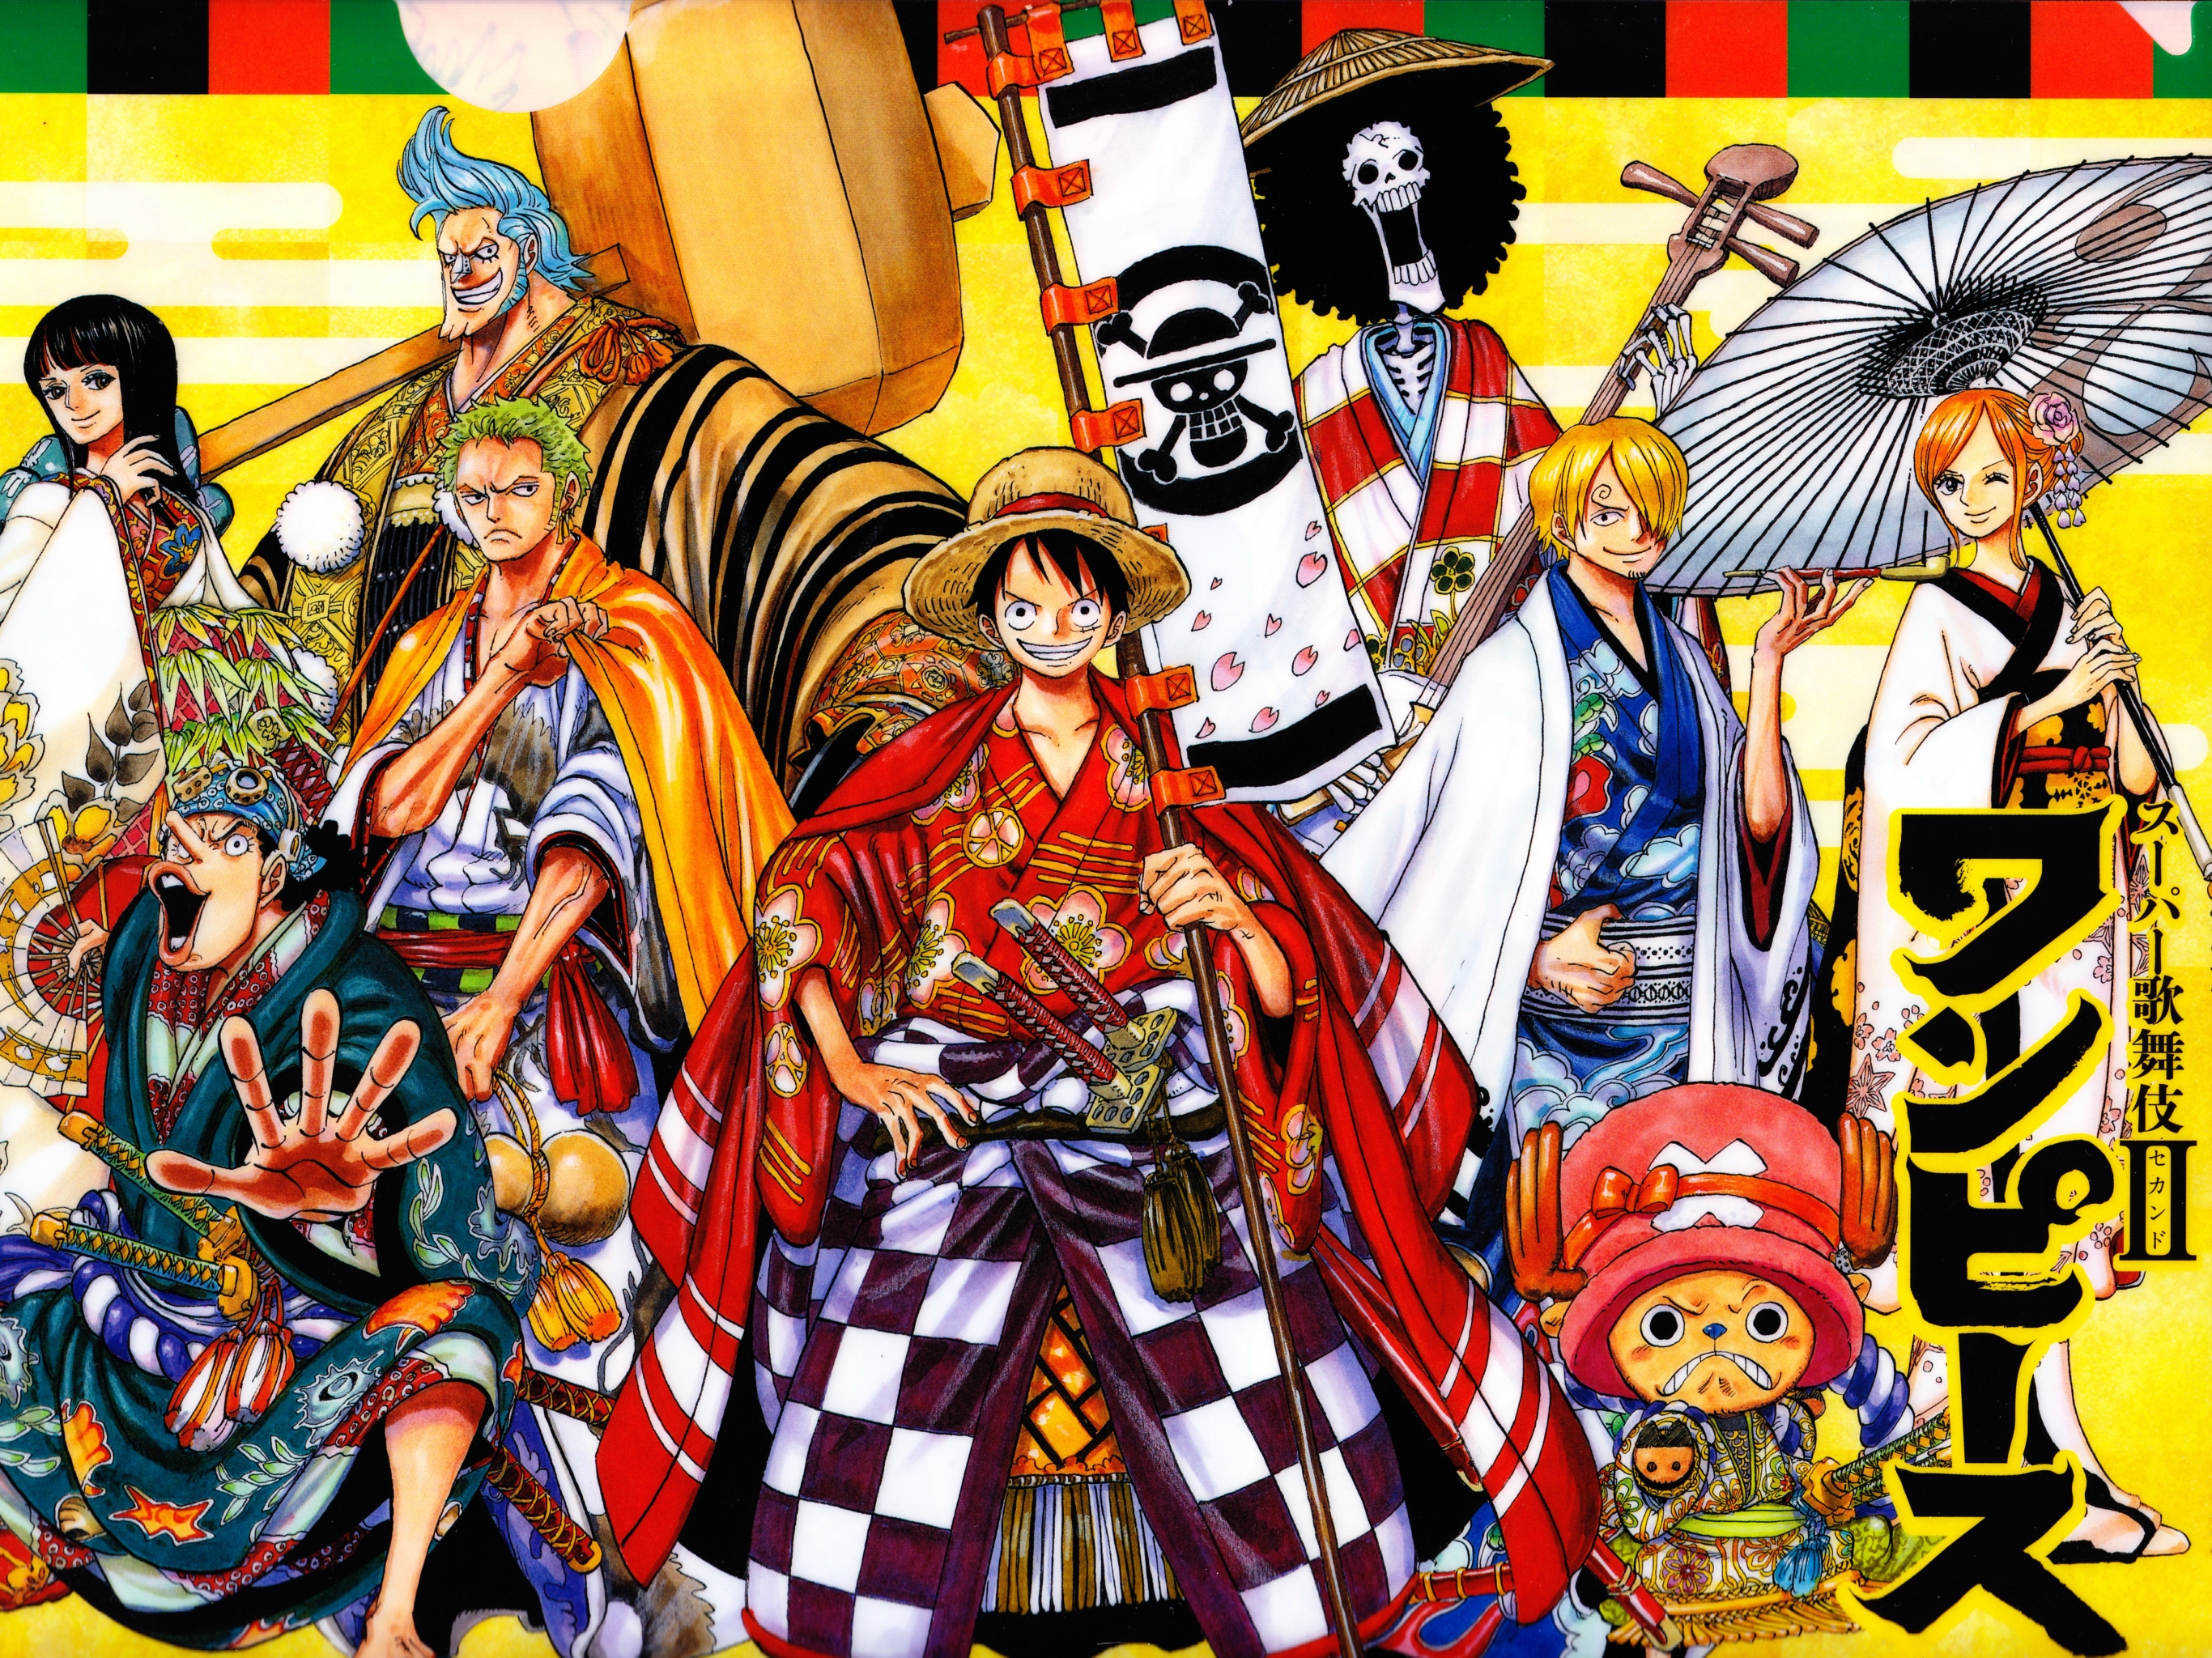 Free download wallpaper Anime, One Piece, Tony Tony Chopper, Usopp (One Piece), Roronoa Zoro, Monkey D Luffy, Nami (One Piece), Sanji (One Piece), Nico Robin, Franky (One Piece), Japanese Clothes on your PC desktop